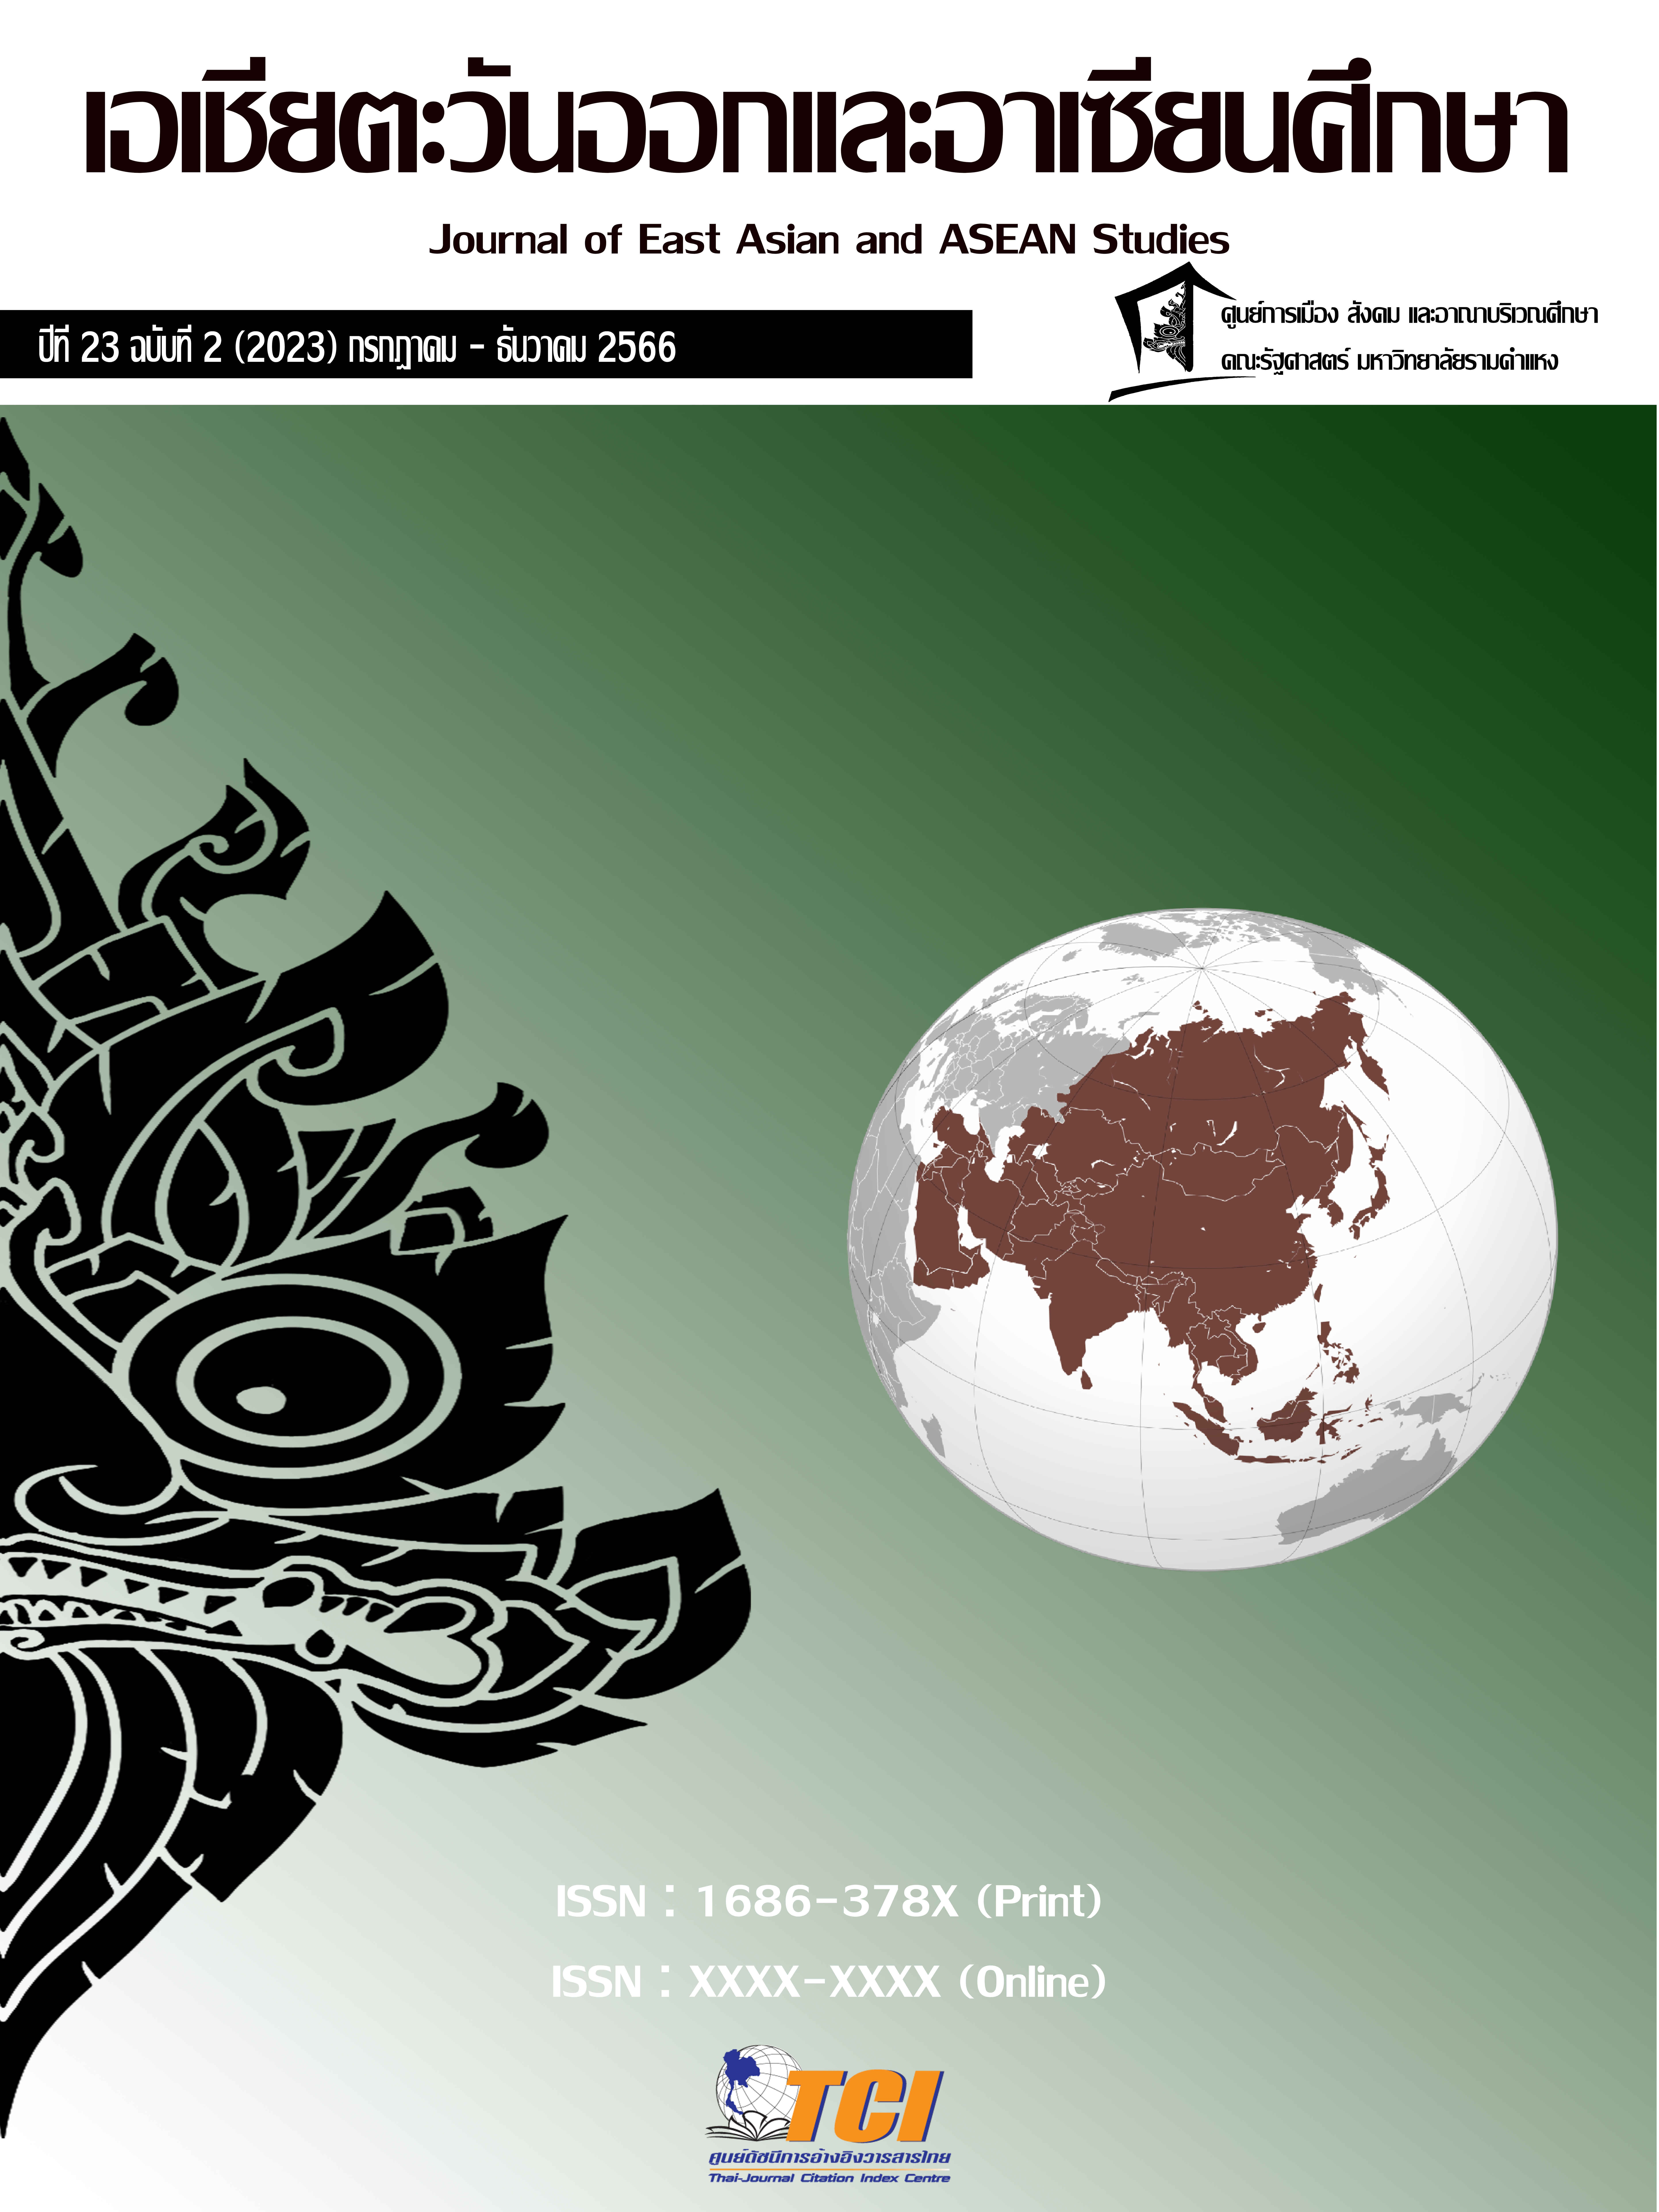 					ดู ปีที่ 23 ฉบับที่ 2 (2023): กรกฎาคม-ธันวาคม : วารสารเอเชียตะวันออกเเละอาเซียนศึกษา
				